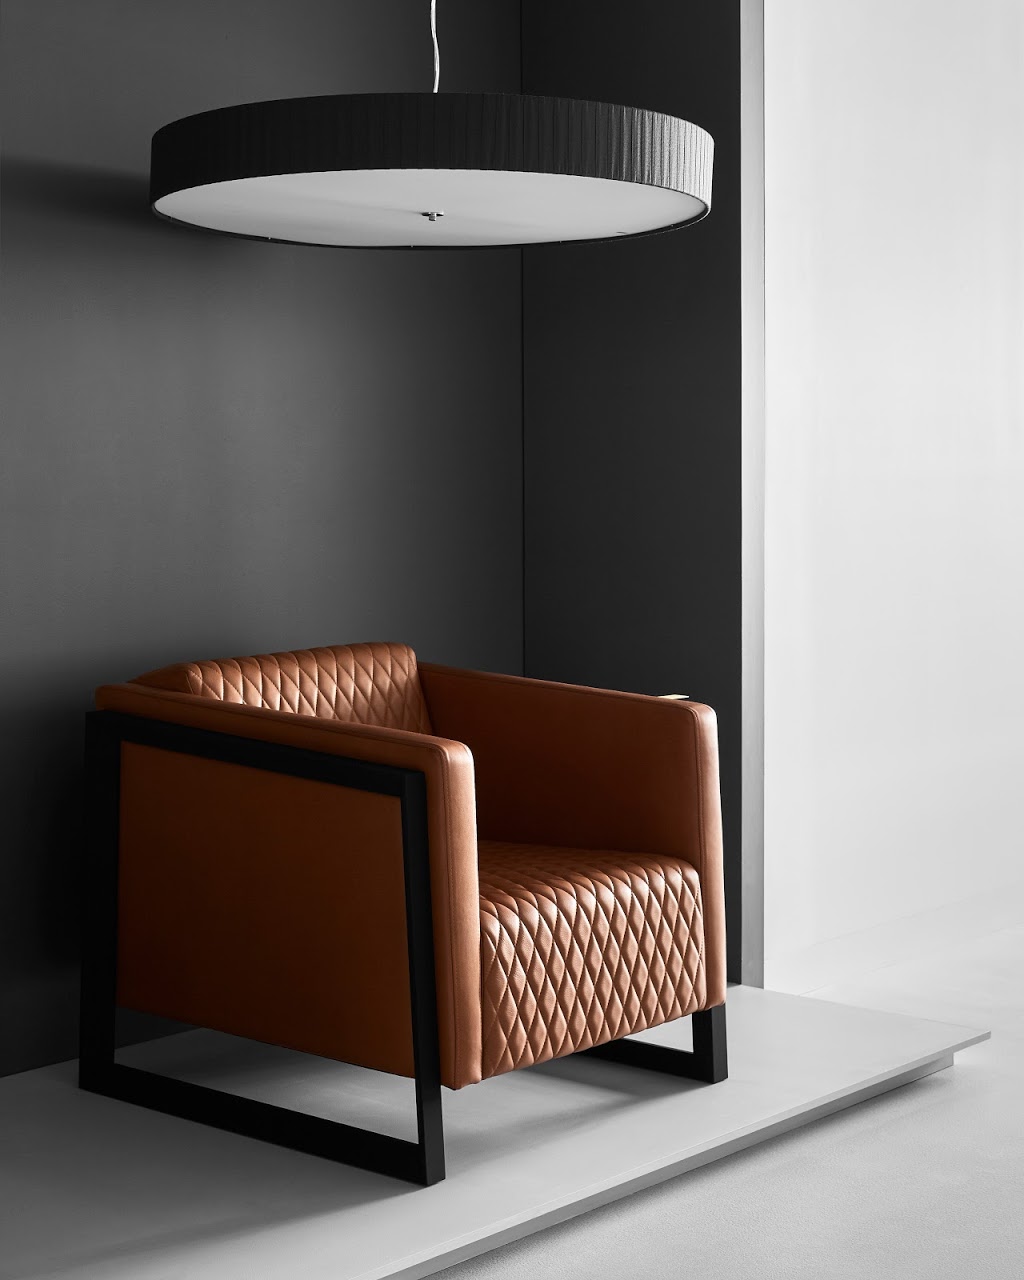 FrancoCrea - Designer Furniture | furniture store | 259 Swan St, Richmond VIC 3121, Australia | 0390370819 OR +61 3 9037 0819